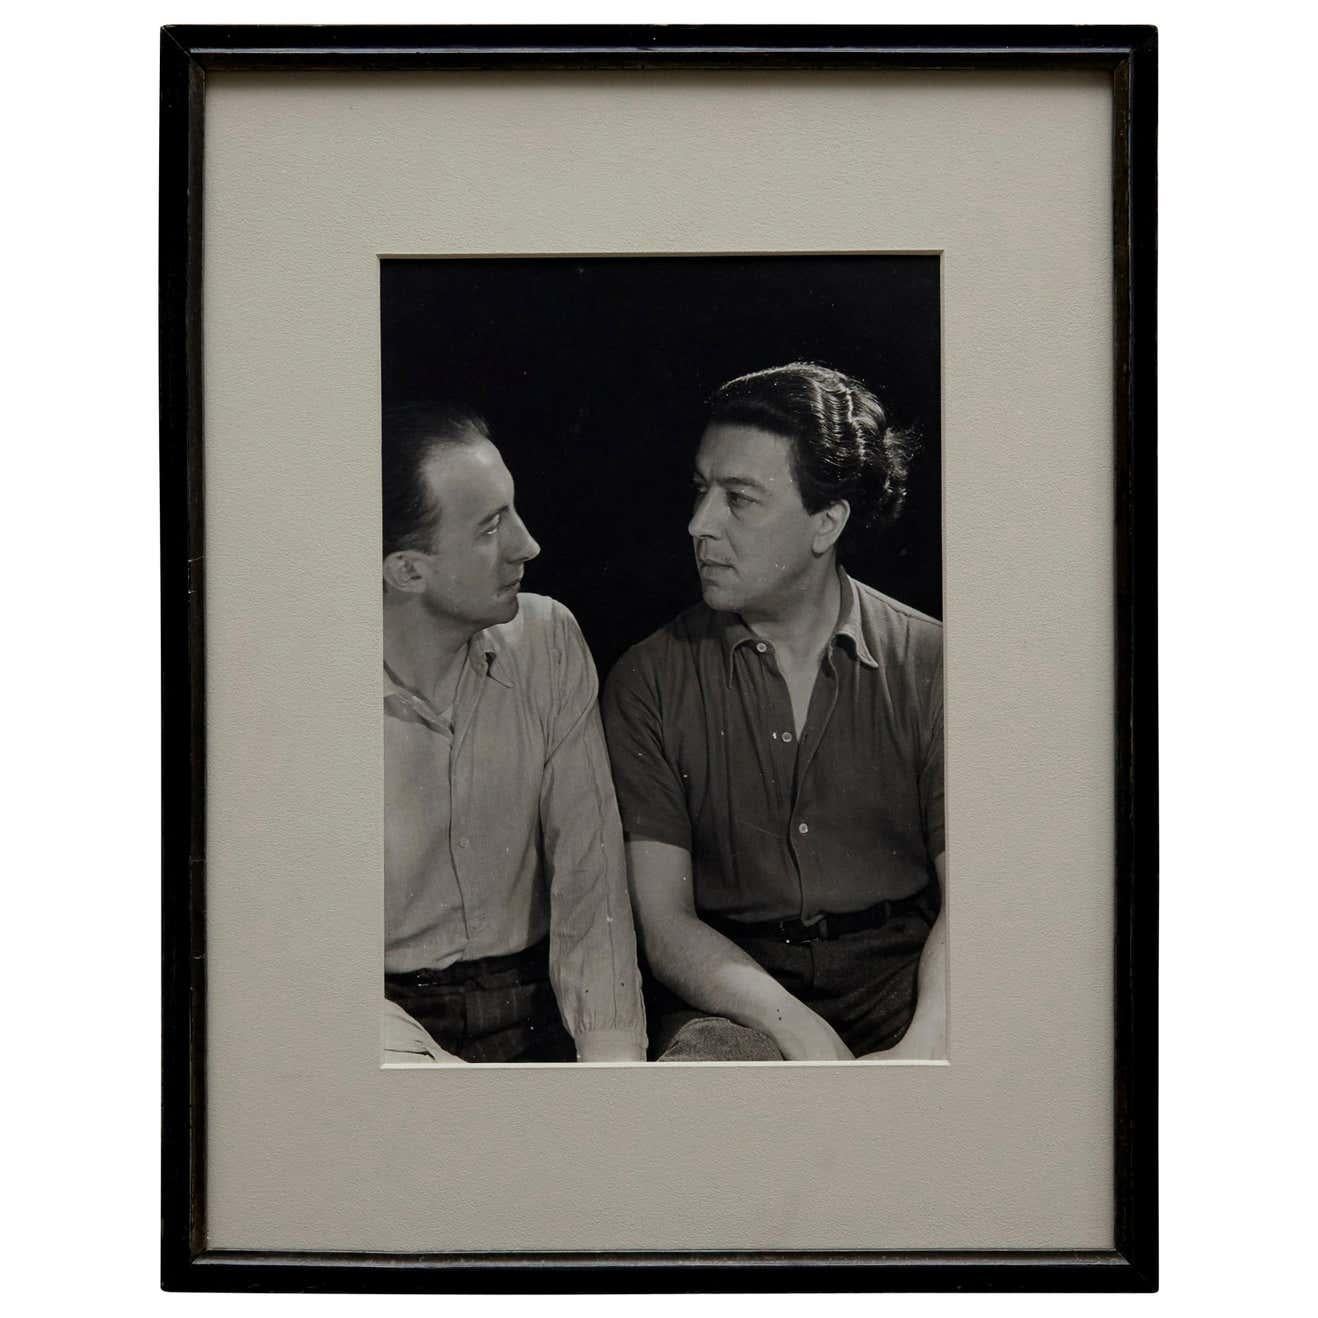 Porträt von Paul Eluard und André Breton, fotografiert von Man Ray, 1932.

Ein posthumer Abzug vom Originalnegativ aus dem Jahr 1977 von Pierre Gassmann.

Gelatinesilberbromid.

Geboren (Philadelphia, 1890-Paris, 1976) als Emmanuel Radnitzky,